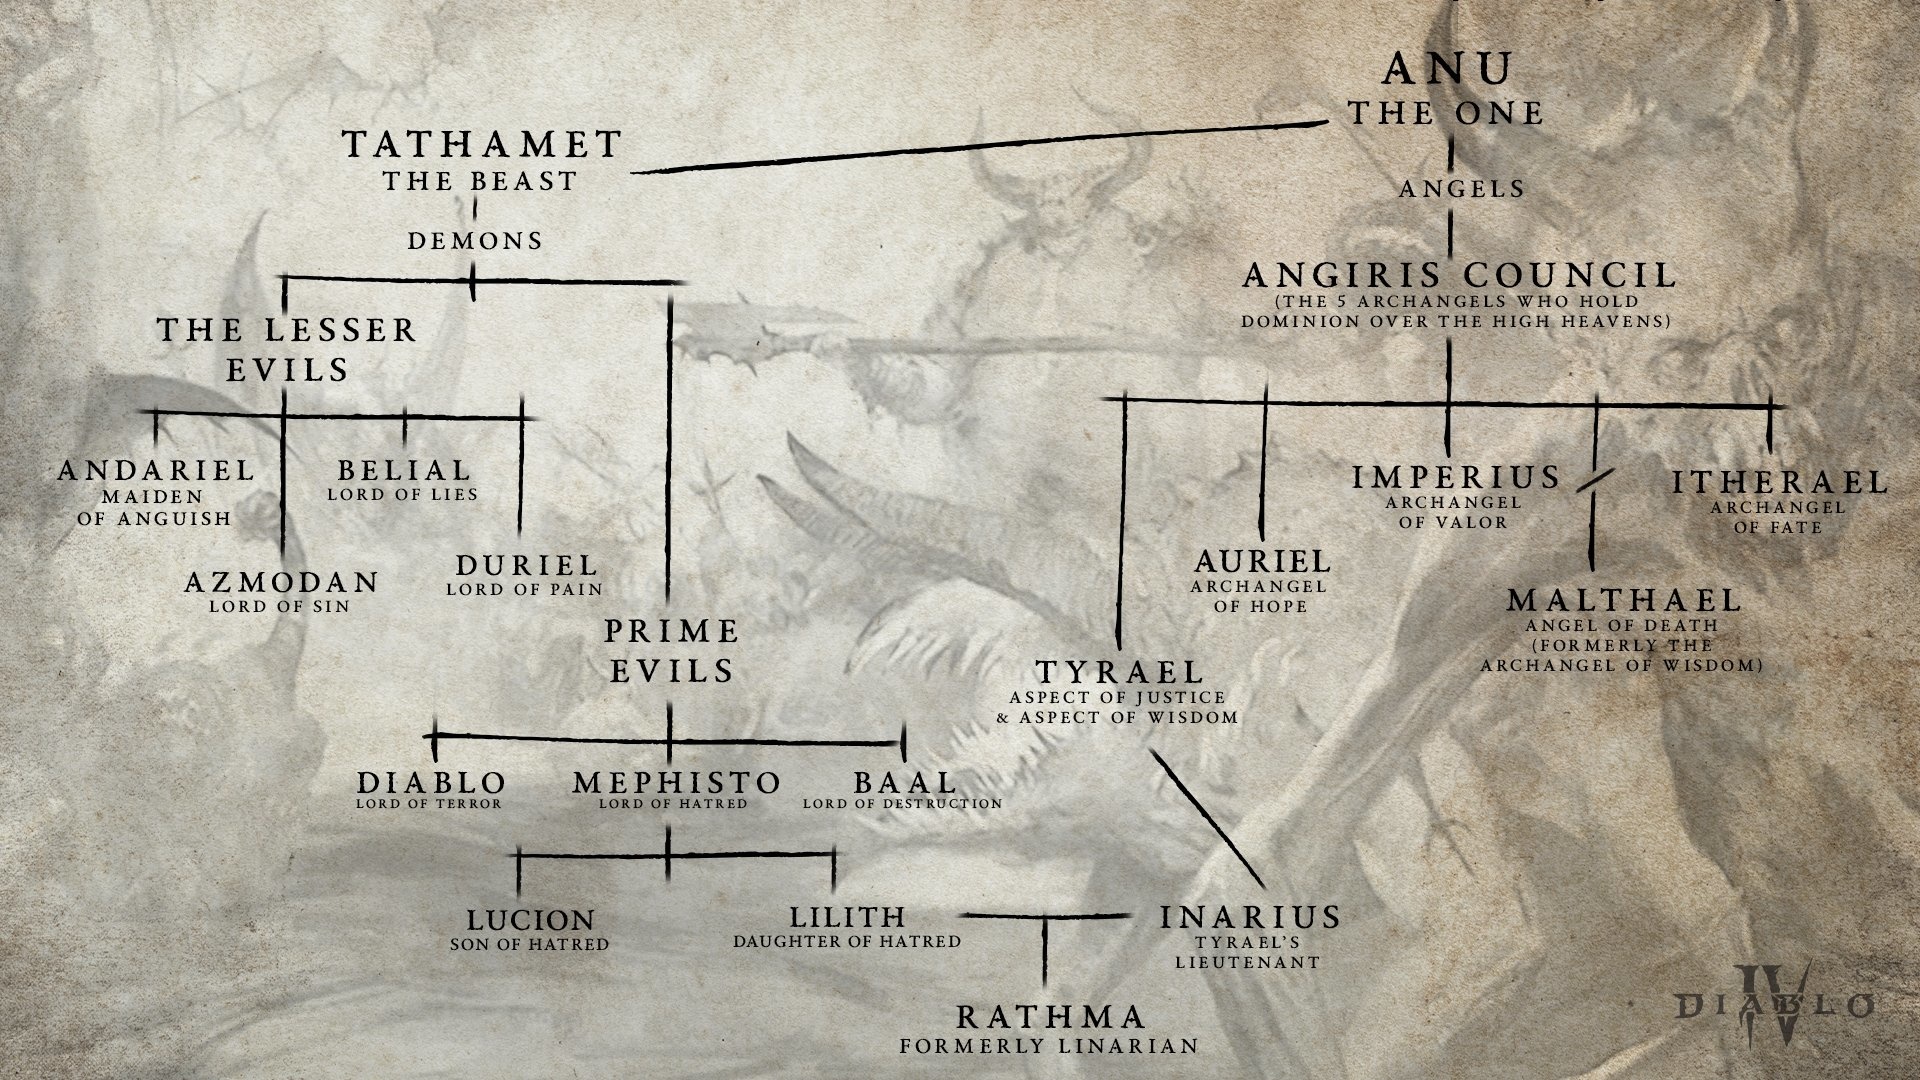 (En partant du premier être Anu, l''arbre généalogique montre les anges et les démons jusqu''au fils de Lilith et Inarius)